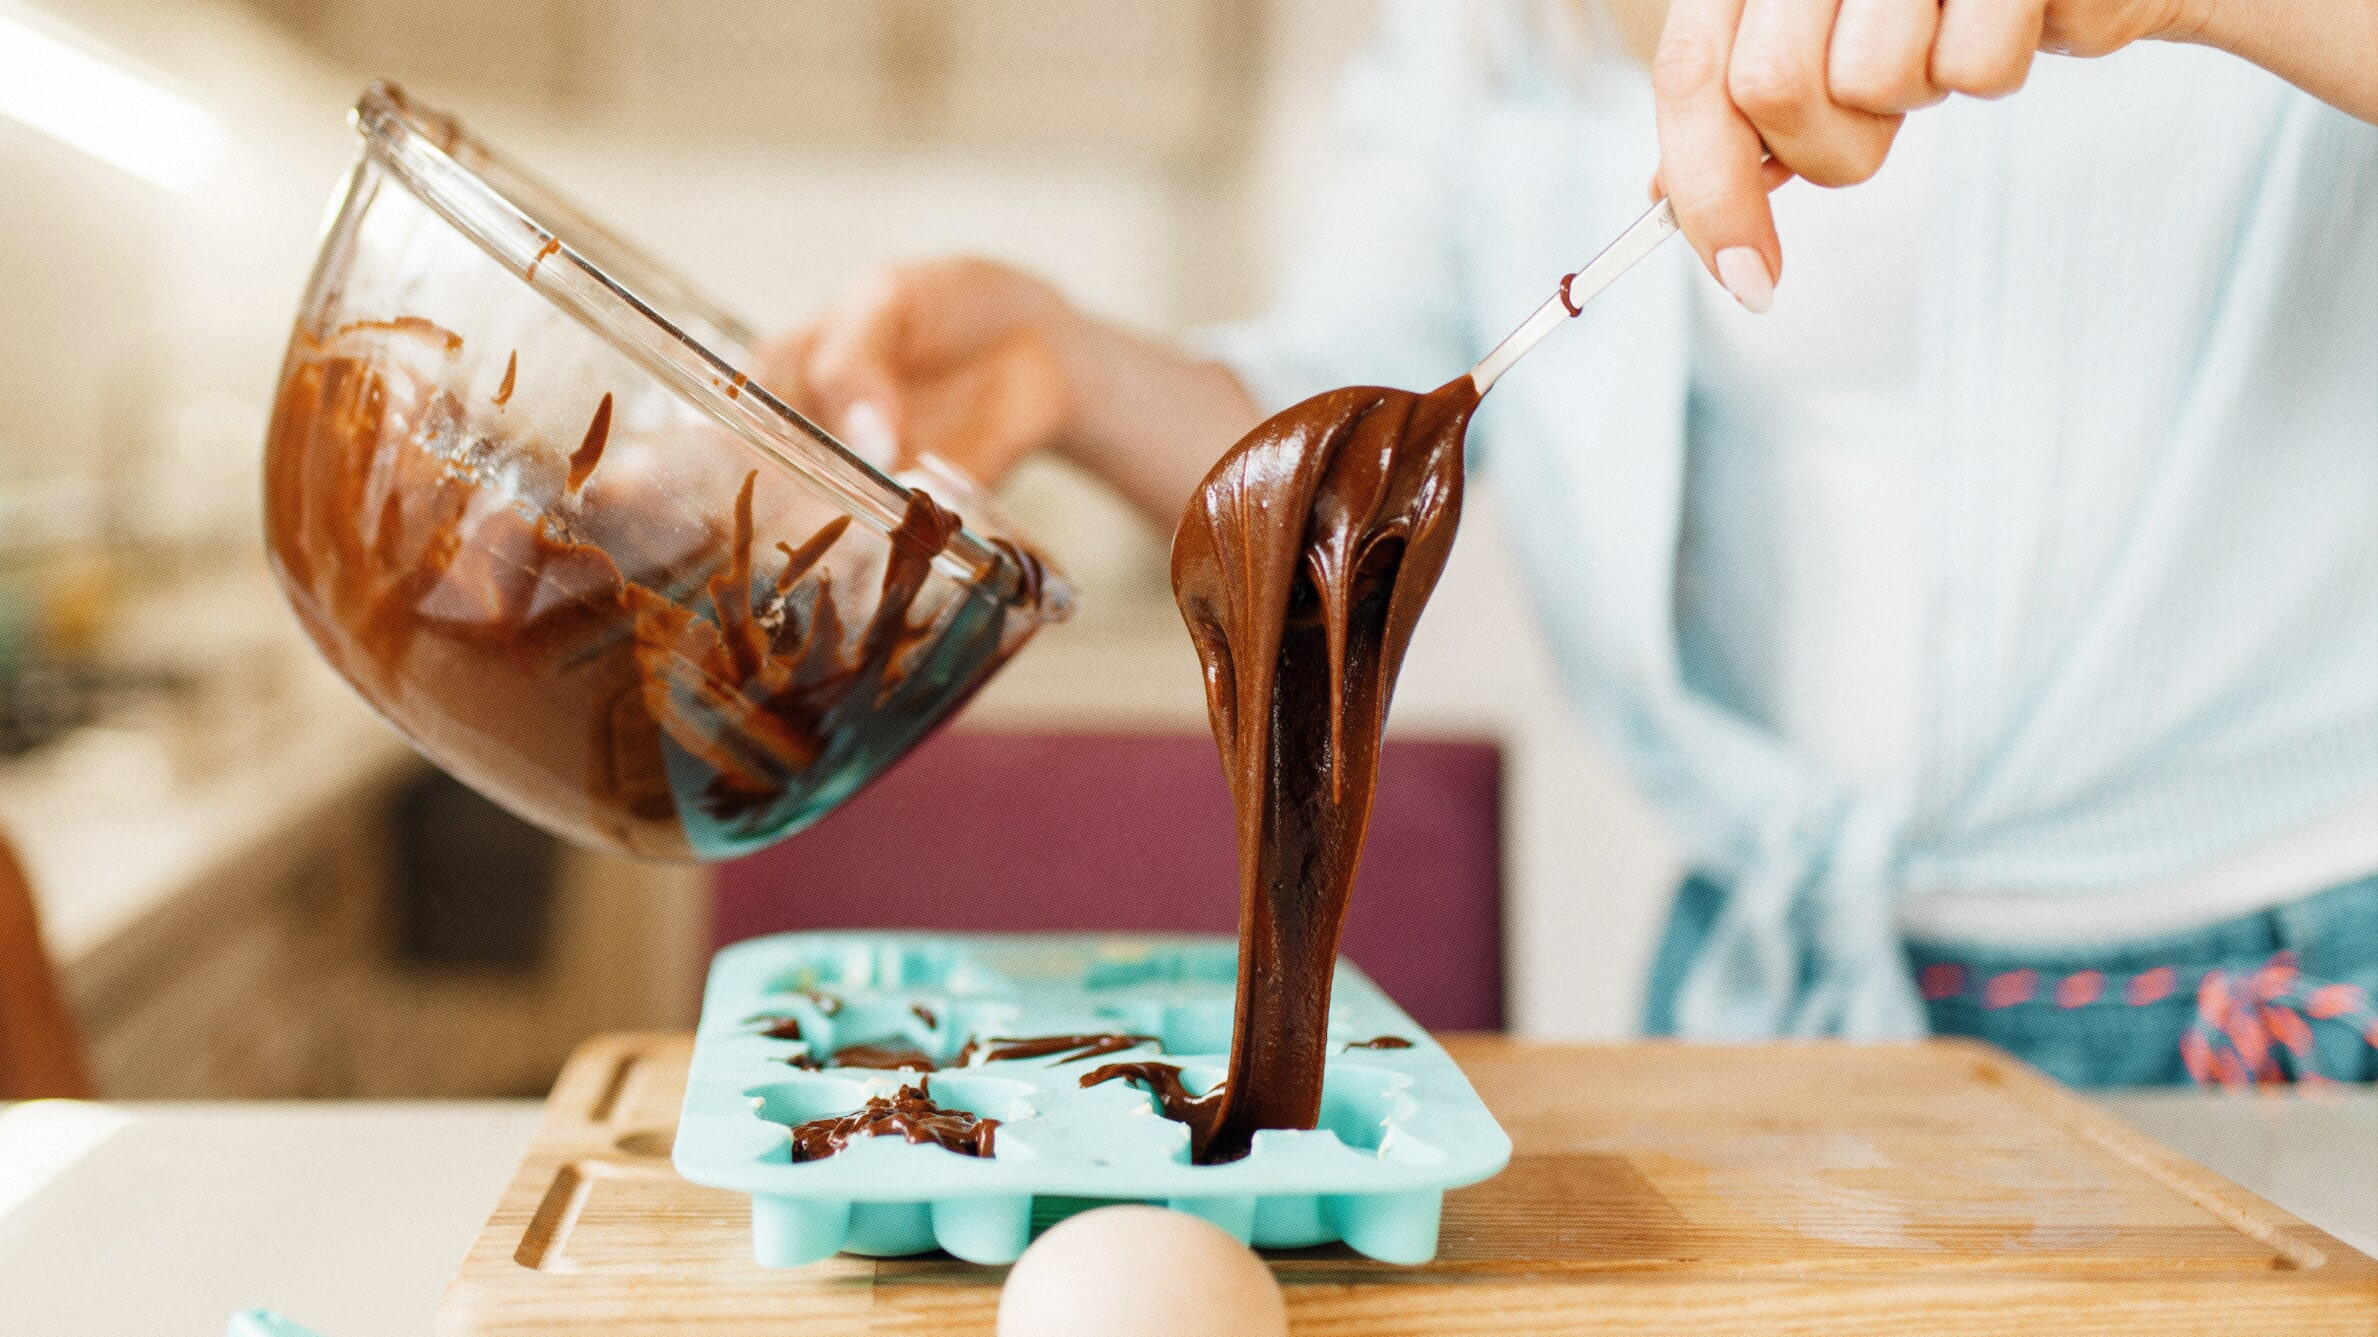 Шоколадные плитки (как проще всего темперировать шоколад в домашних условиях)